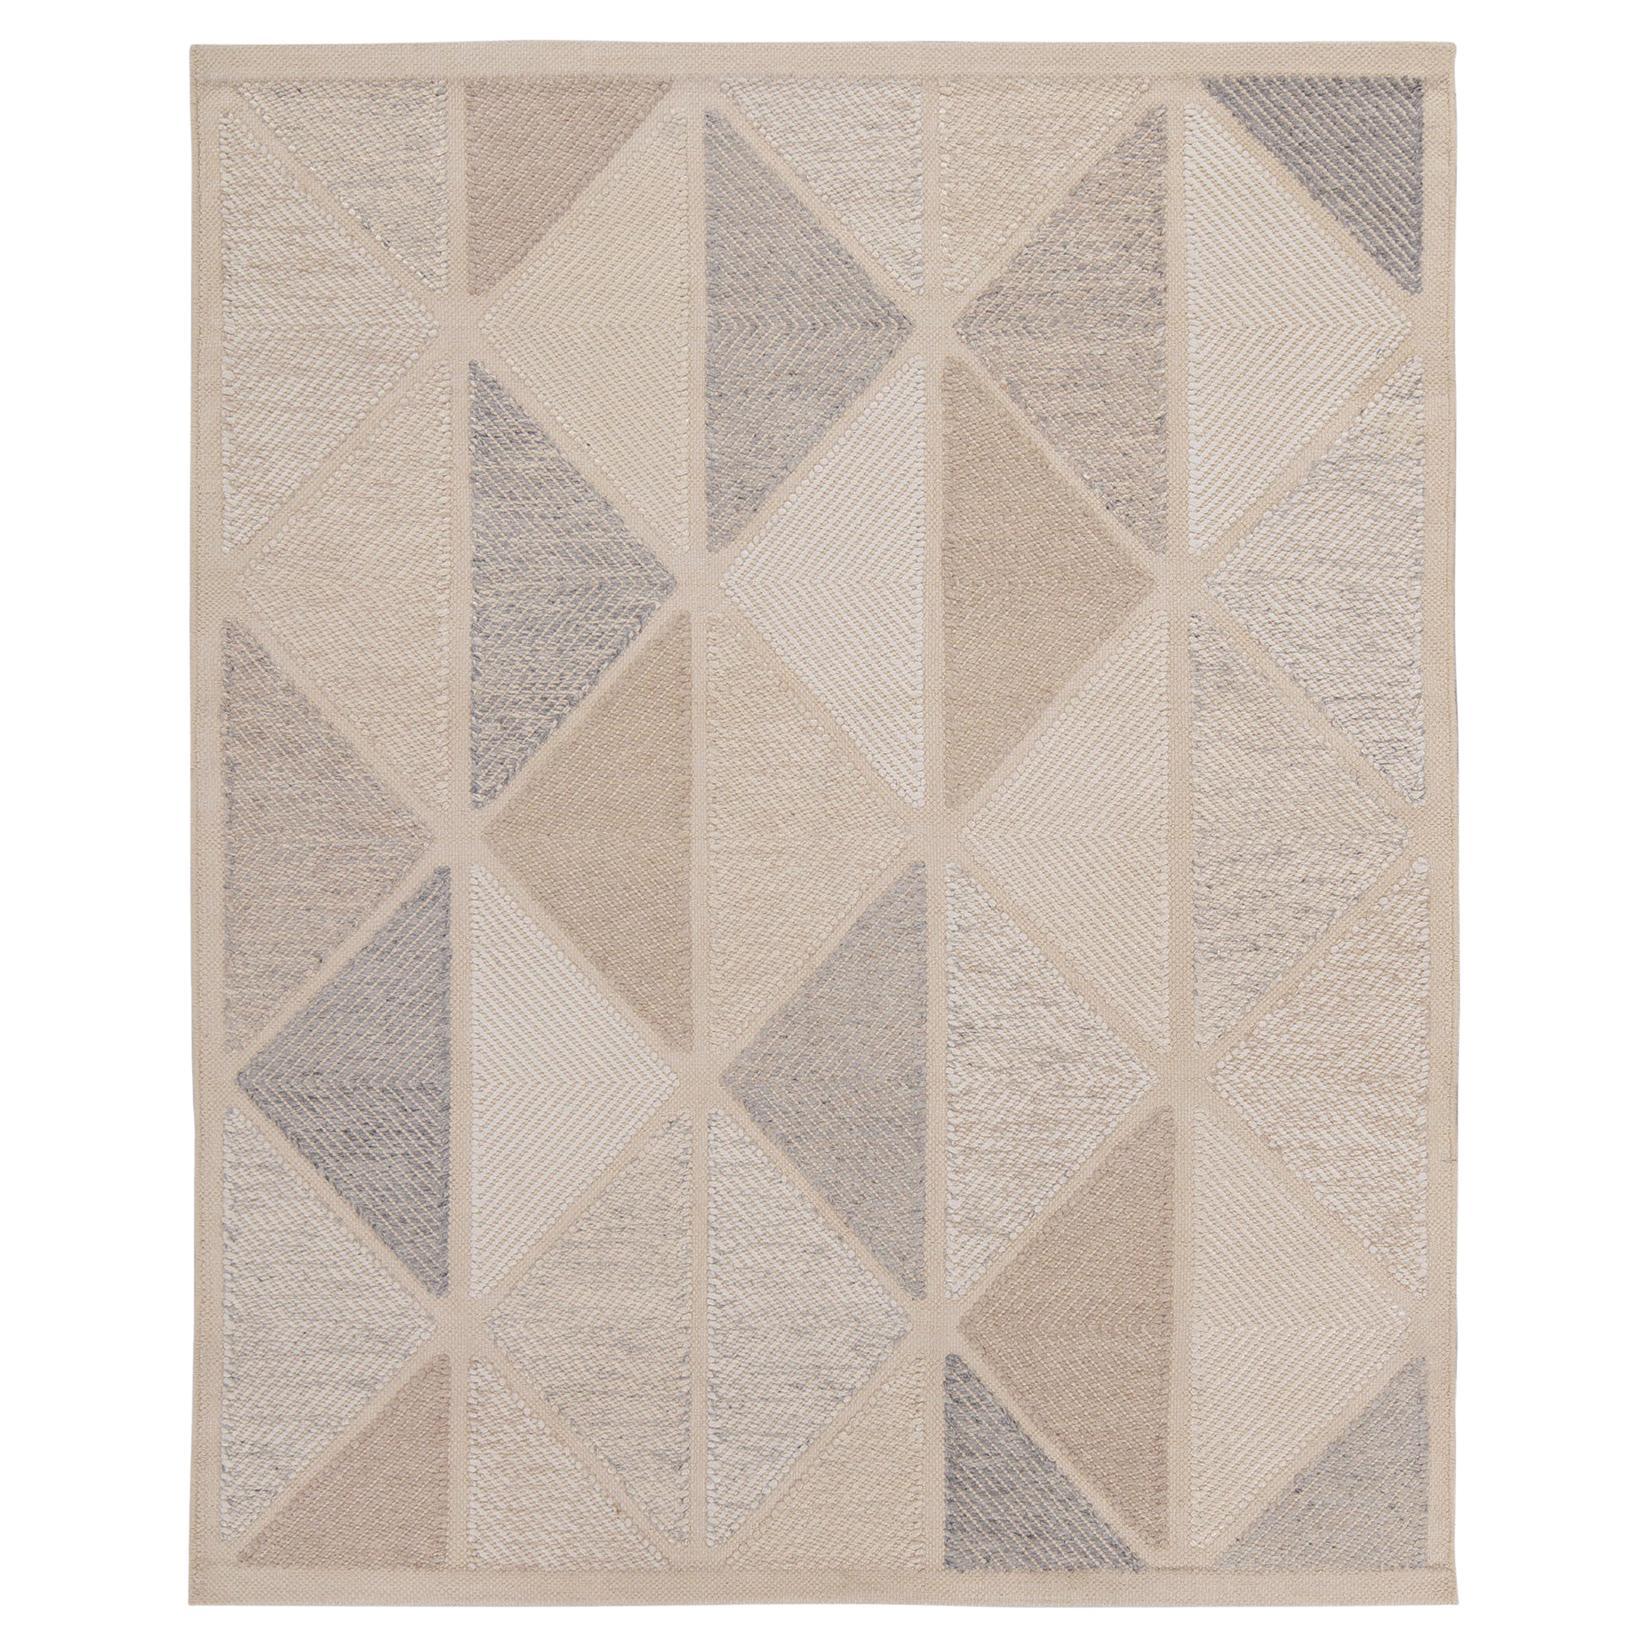 Teppich & Kelim im skandinavischen Stil, Kelim in Beige-Braun, Grau mit geometrischem Muster